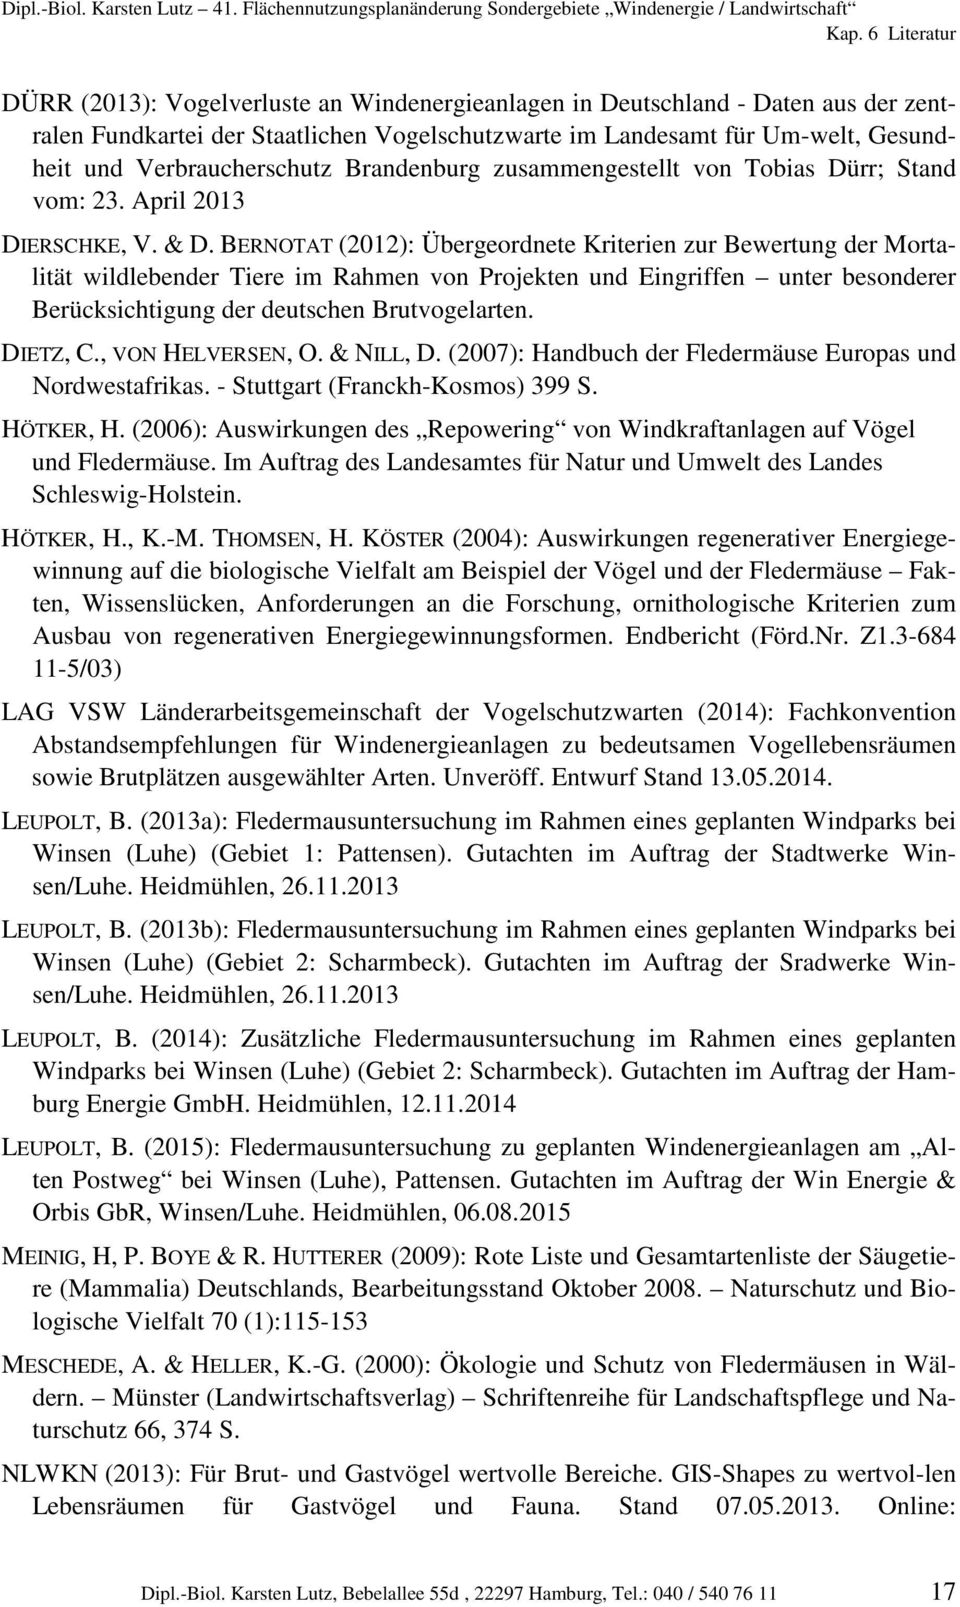 BERNOTAT (2012): Übergeordnete Kriterien zur Bewertung der Mortalität wildlebender Tiere im Rahmen von Projekten und Eingriffen unter besonderer Berücksichtigung der deutschen Brutvogelarten.